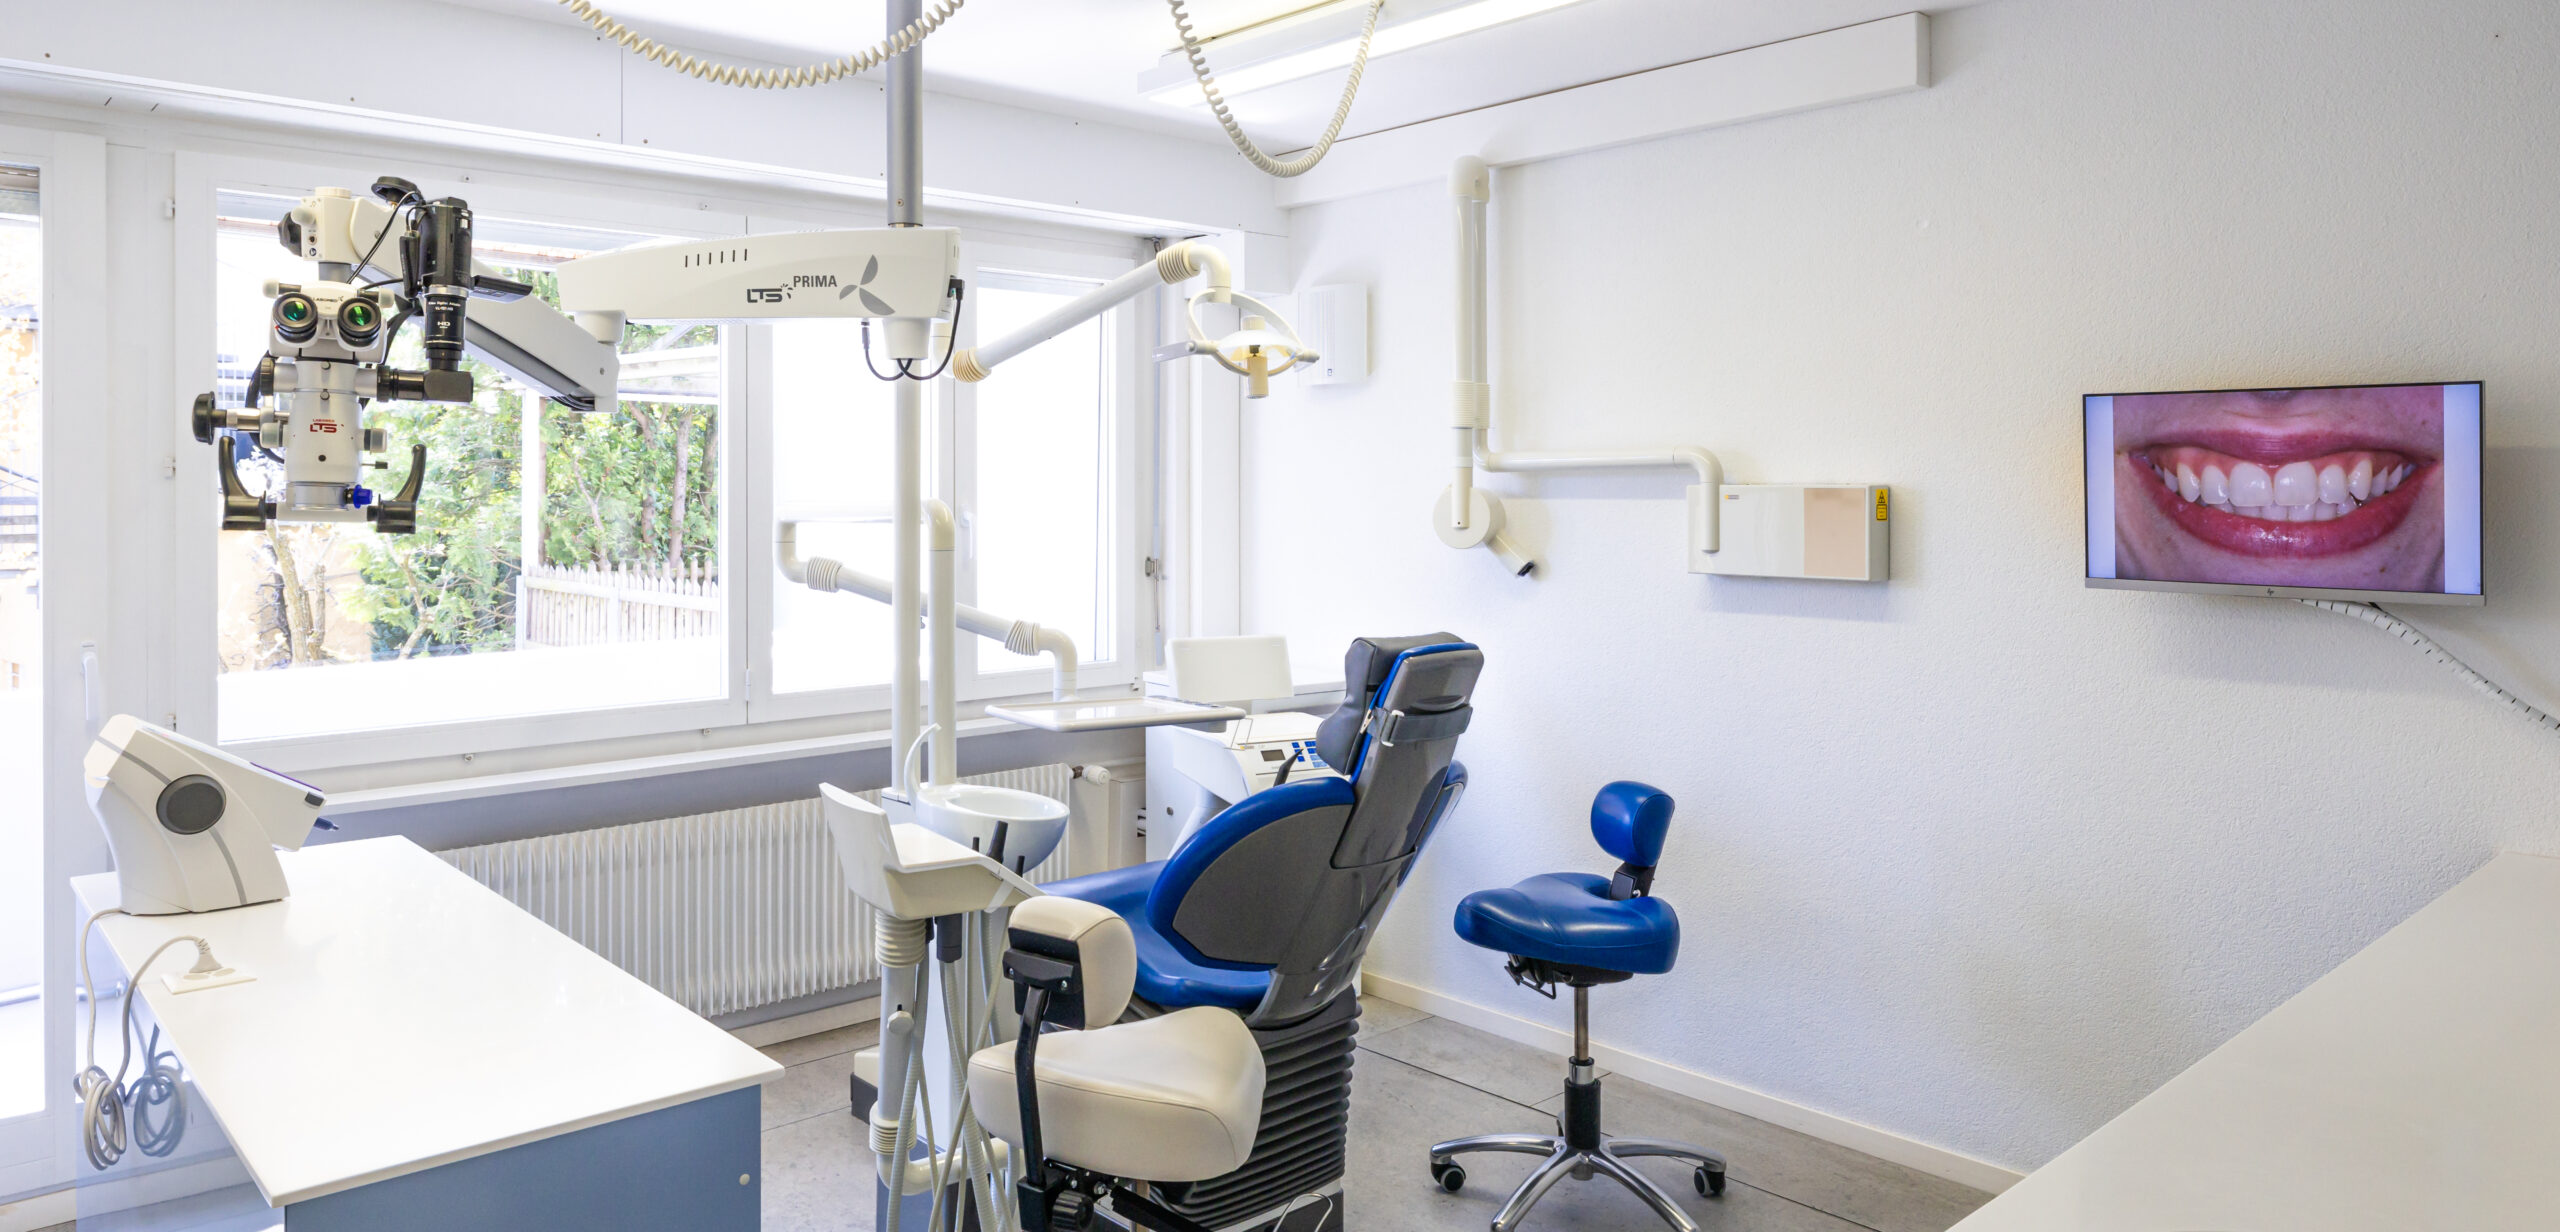 Société suisse de parodontologie : Bienvenue !